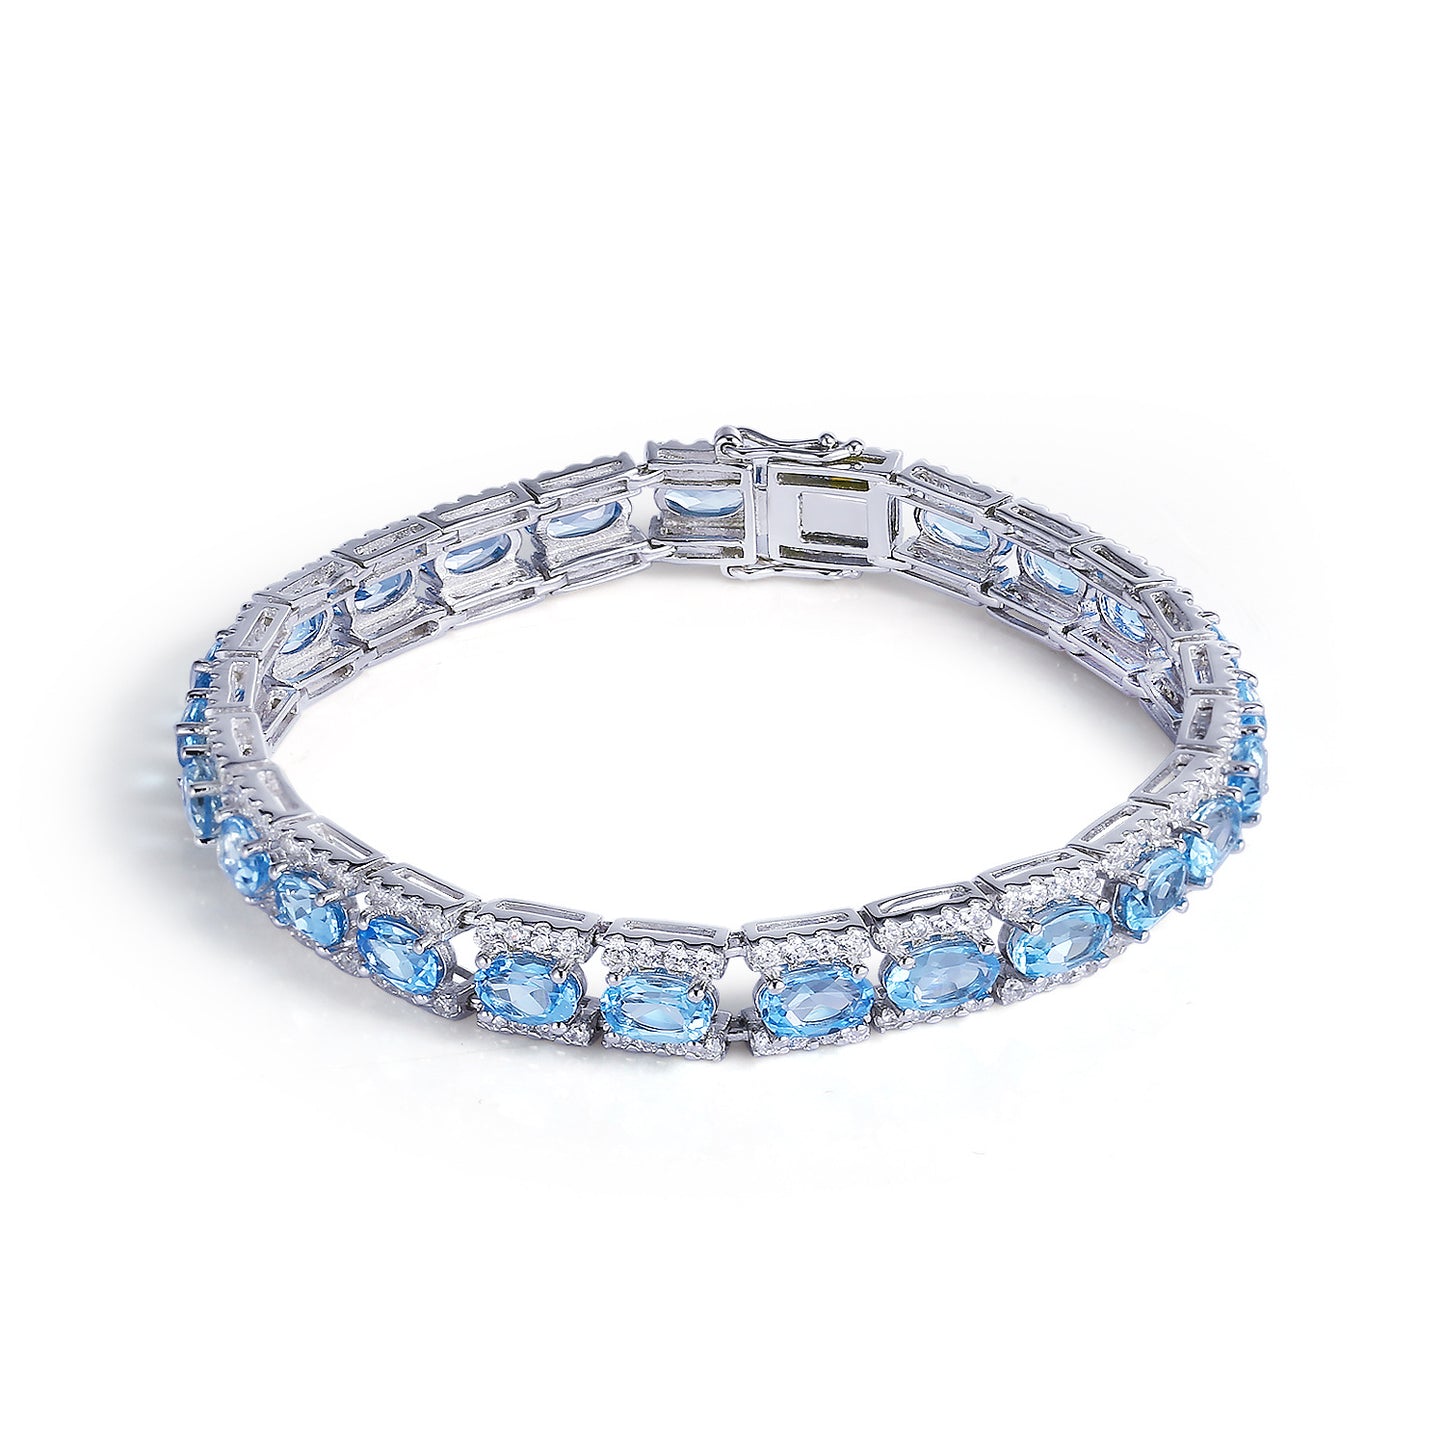 Oval Natural Gemstones Beading Silver Bracelet